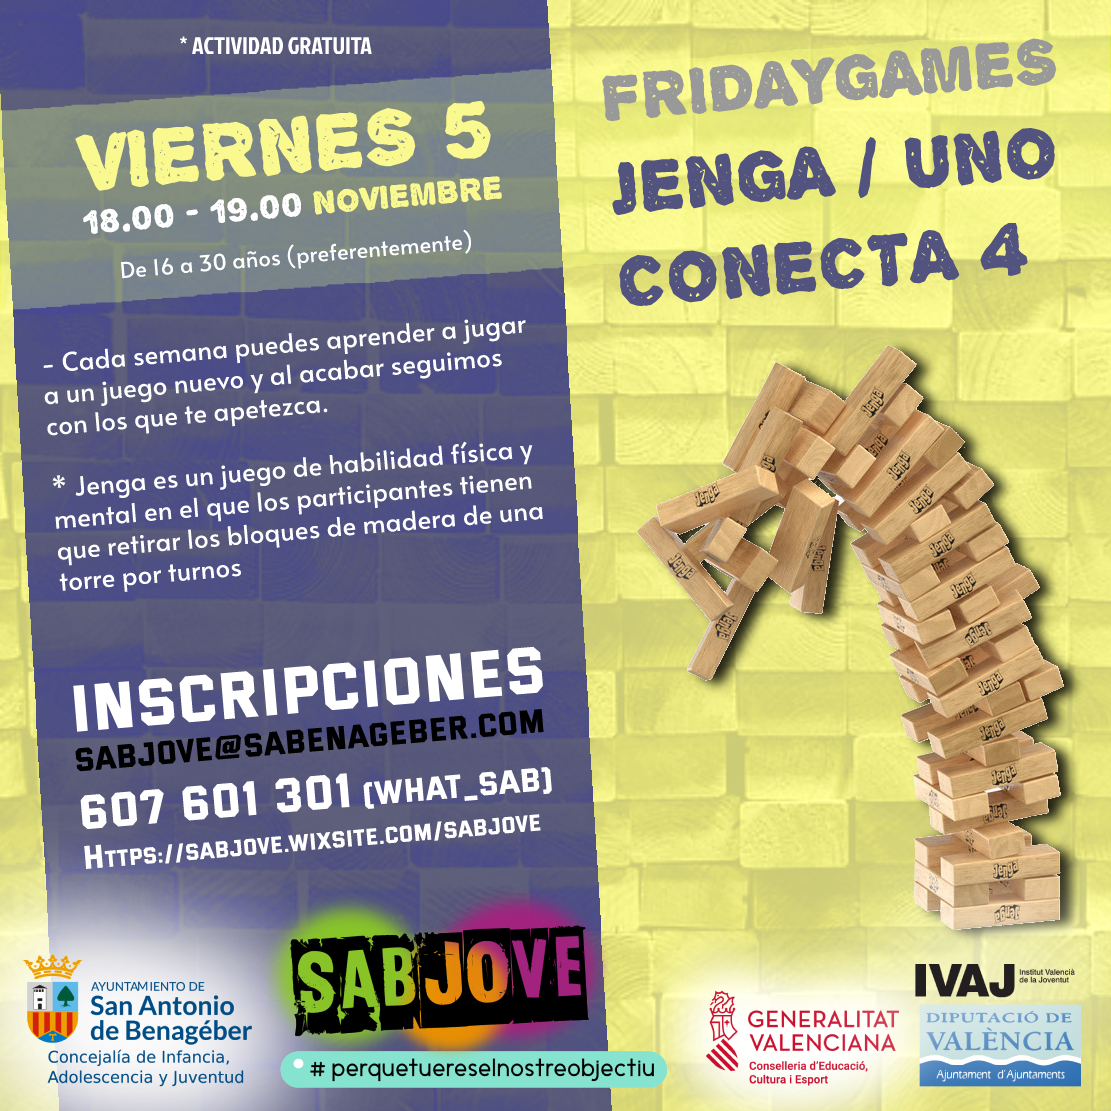 FRIDAY GAMES: "JENGA,UNO,CONECTA-4", San Antonio de Benagéber (SAB)